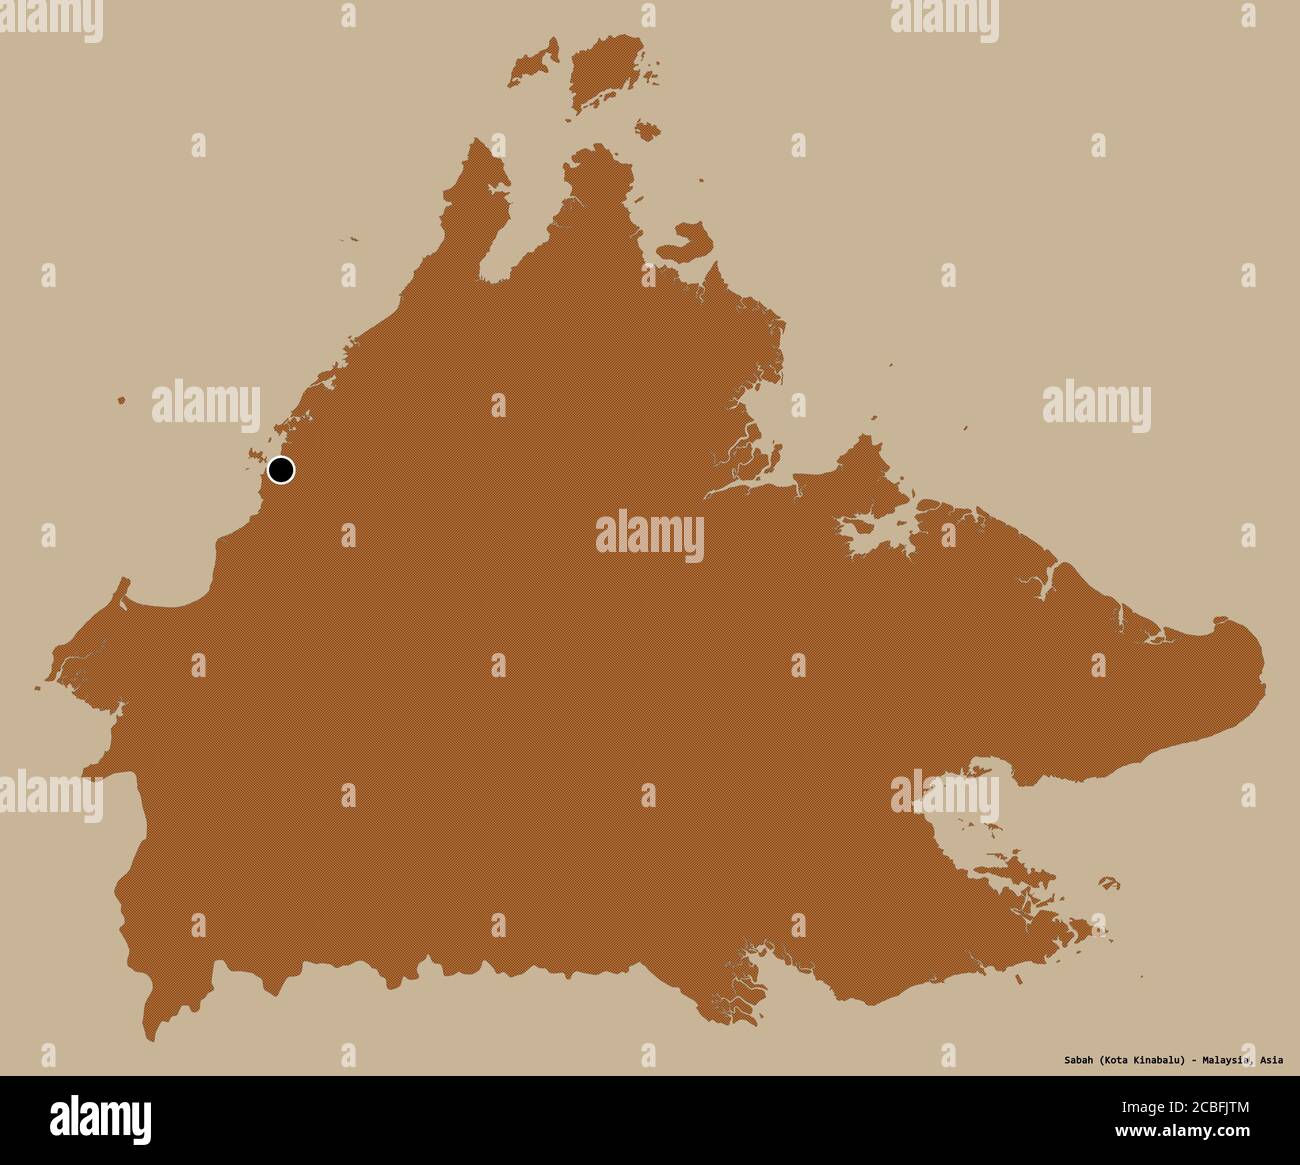 Forma di Sabah, stato della Malesia, con la sua capitale isolata su uno sfondo di colore pieno. Composizione di texture con motivi. Rendering 3D Foto Stock